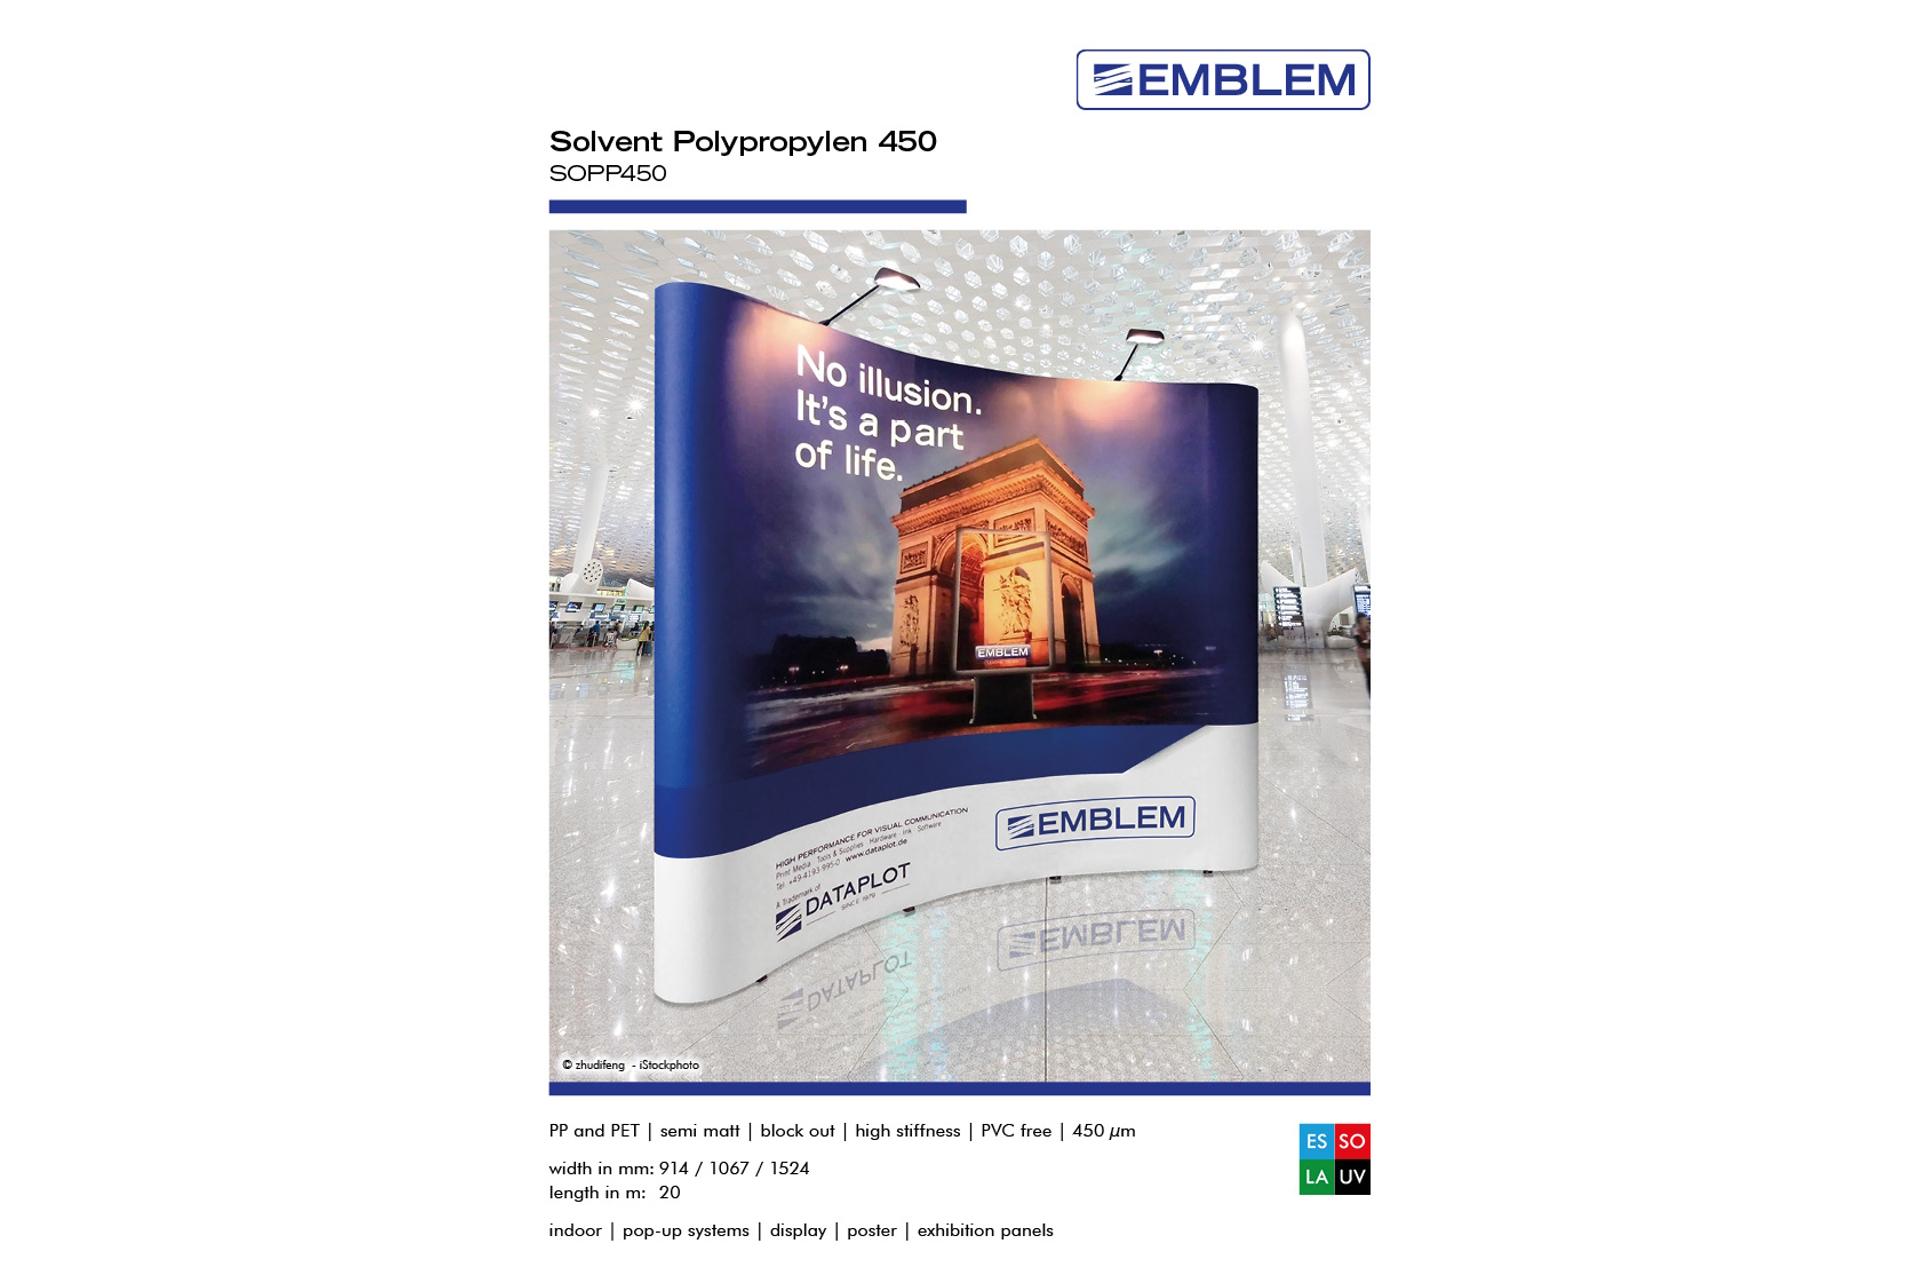 Foto: EMBLEM Polypropylen Film 450 // SOPP450 - Musterrolle ca. 2 - 2,5 m